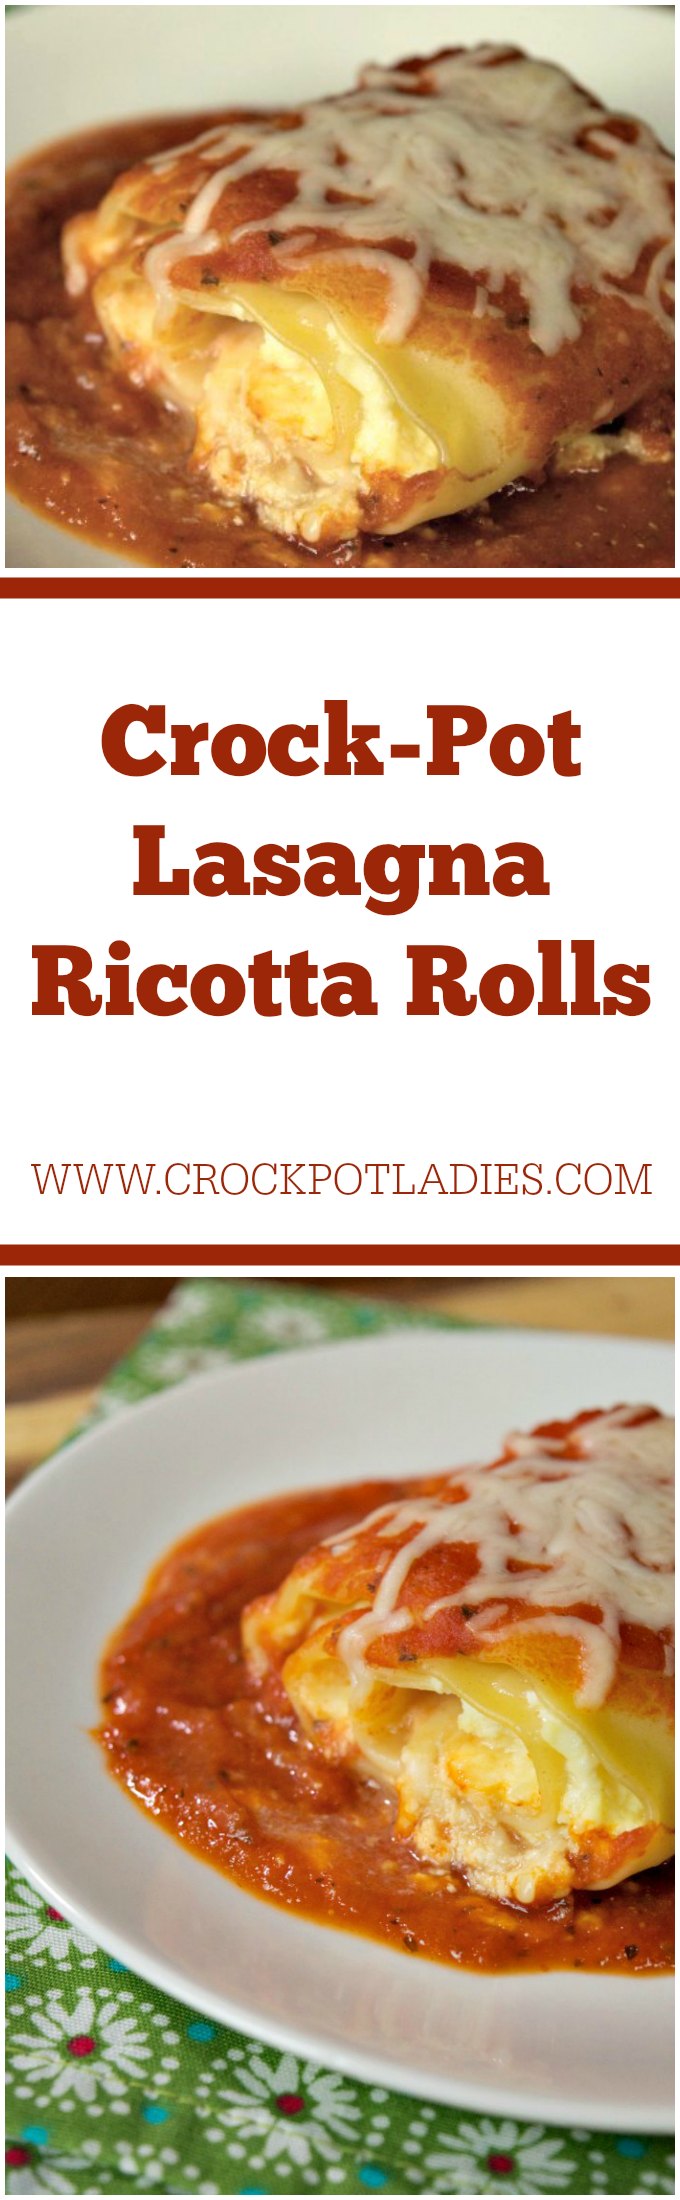 Crock-Pot Lasagna Ricotta Rolls